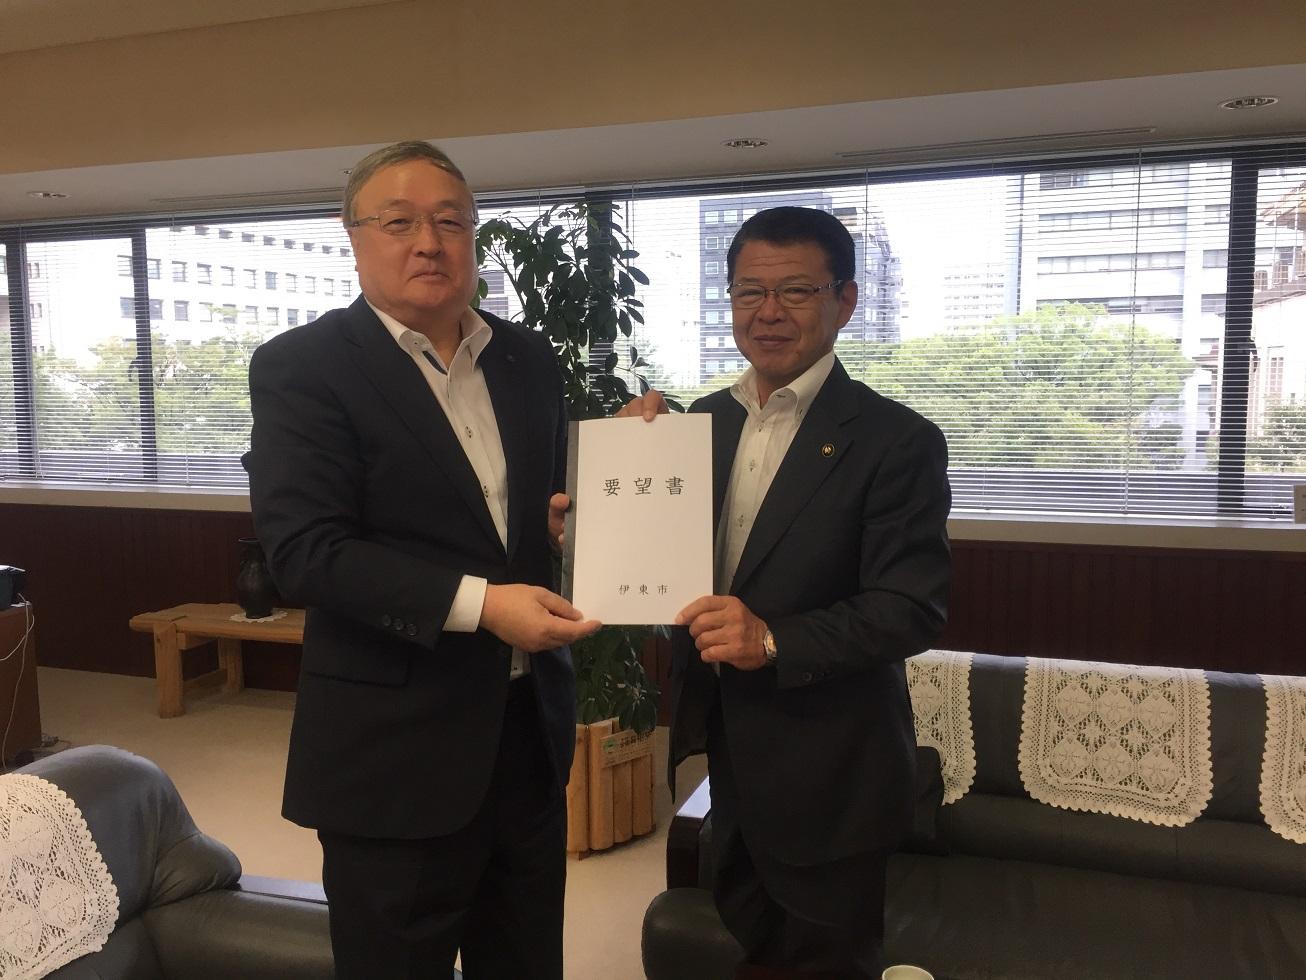 2018年9月4日 伊東市からの要望書を手渡しする伊東市長と受け取る吉林副知事の写真